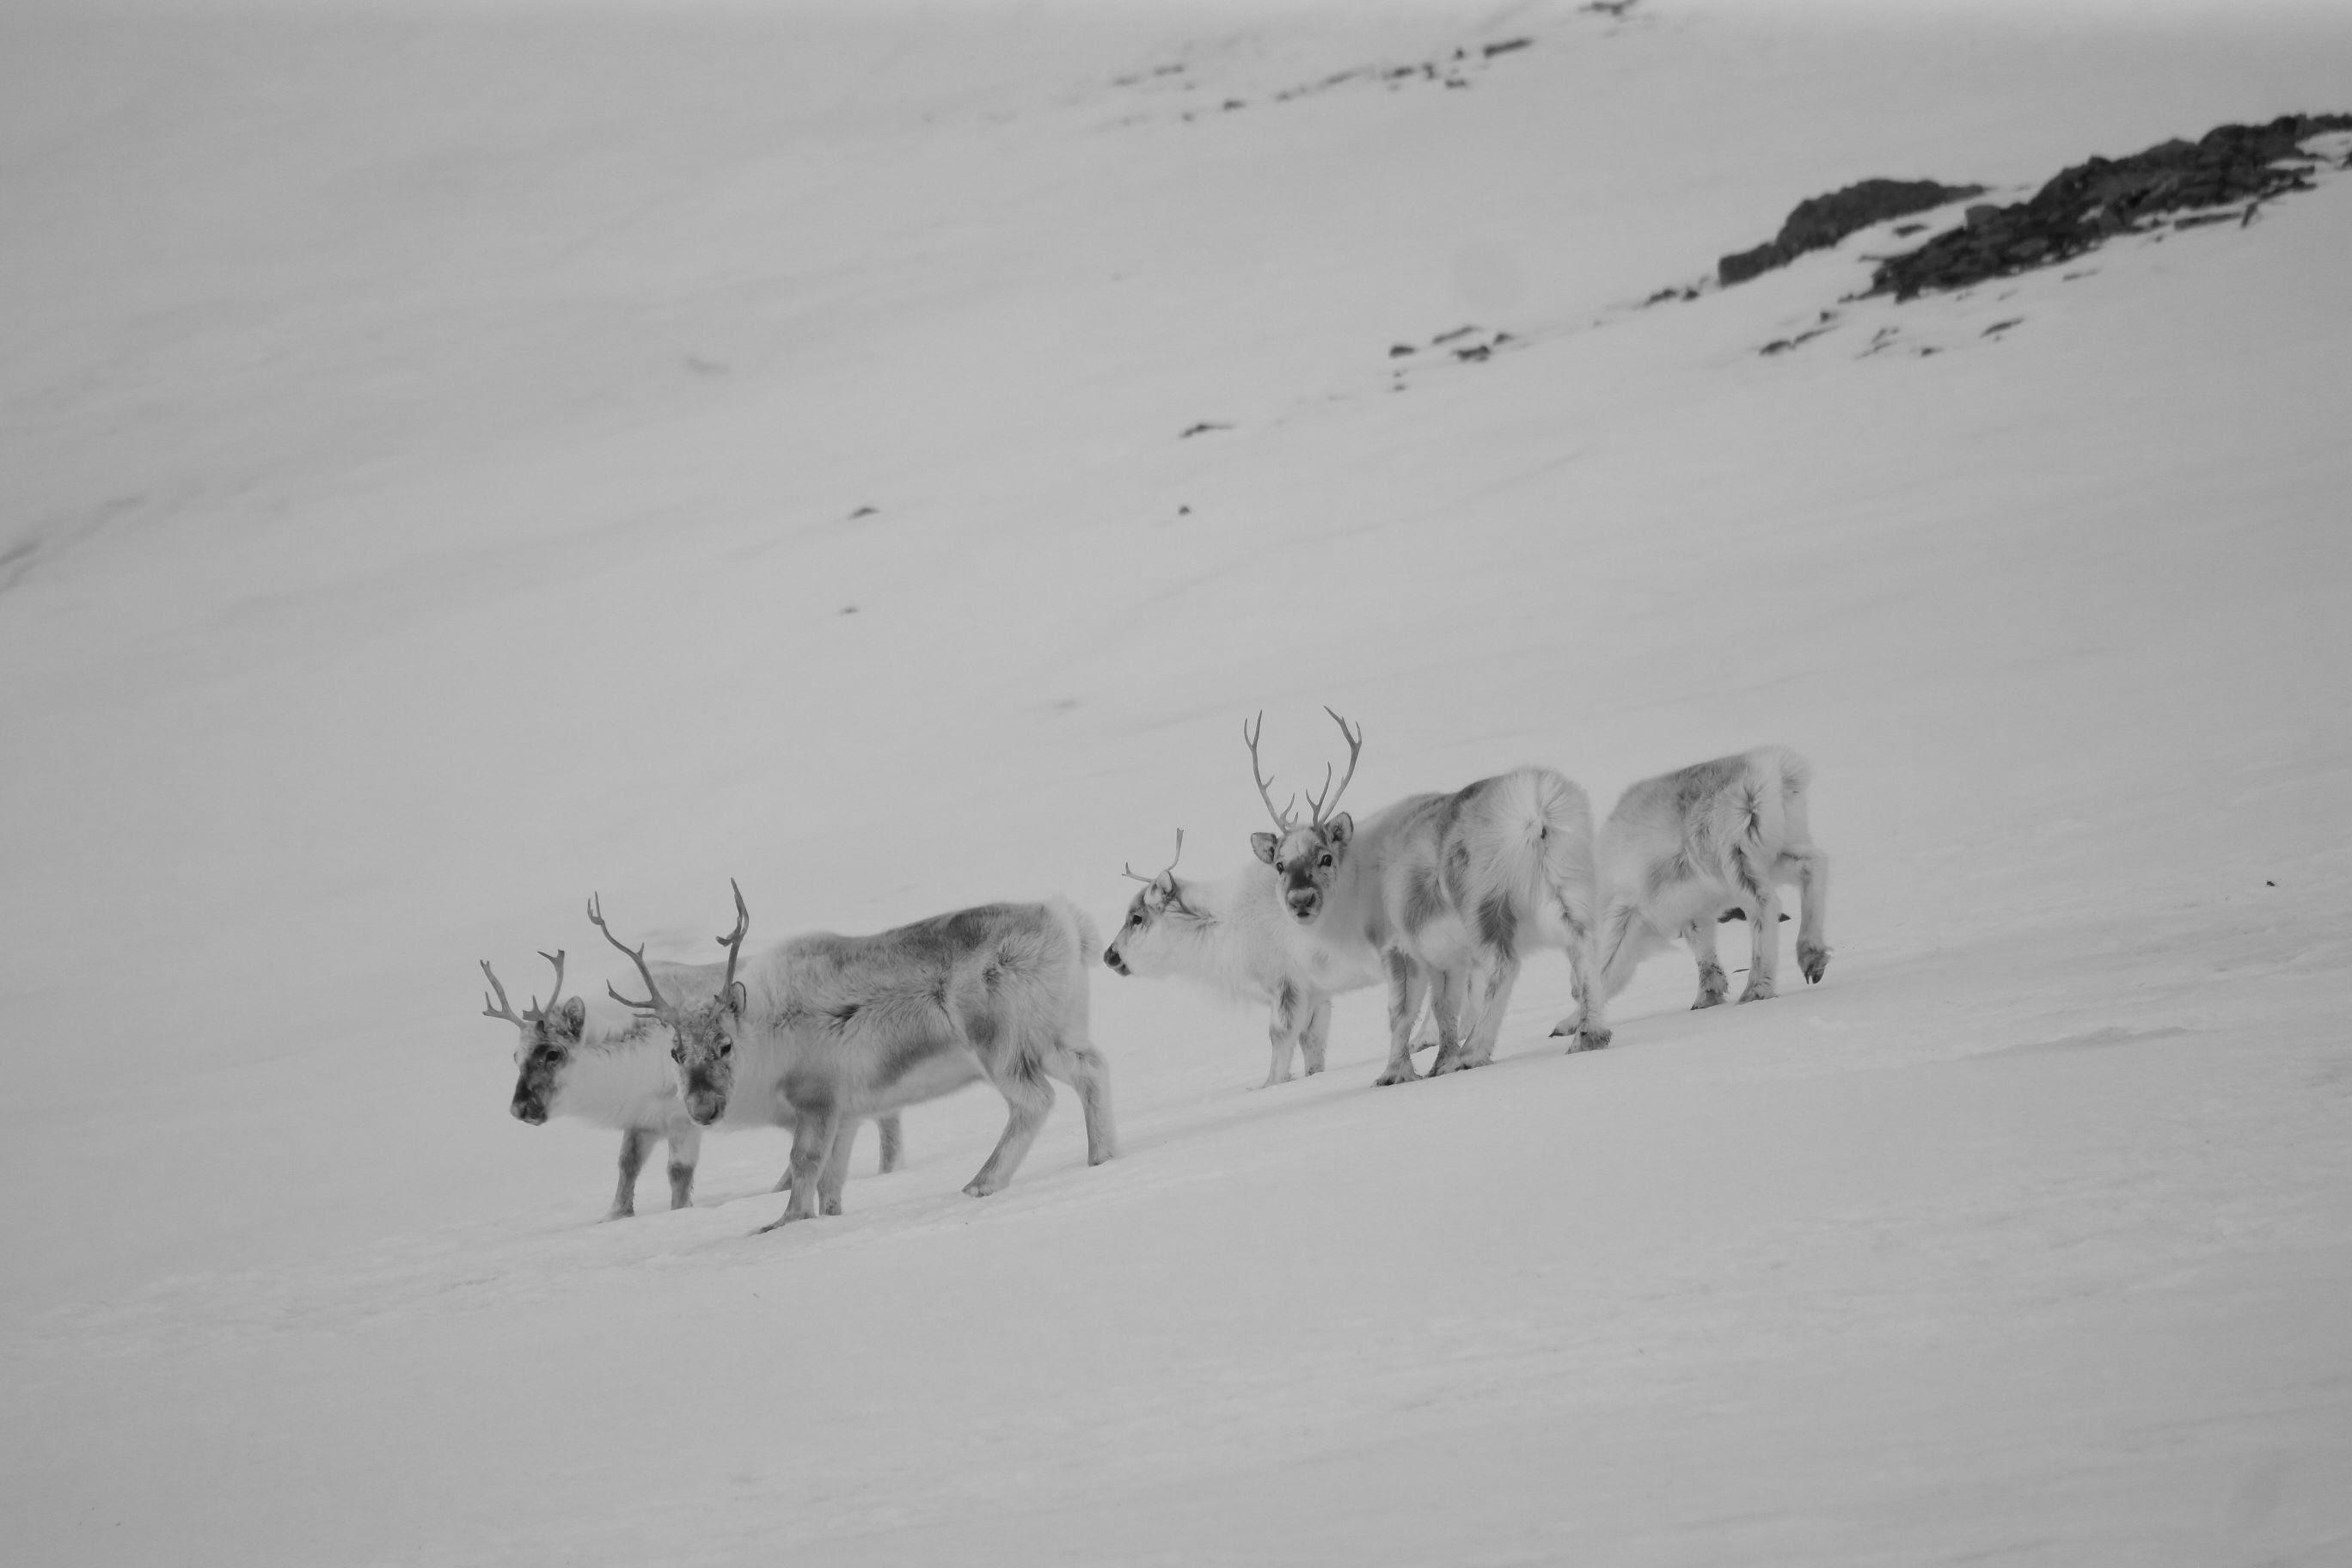 Wylatujemy w lipcu 2020 na wyprawę trekkingową na Spitsbergen